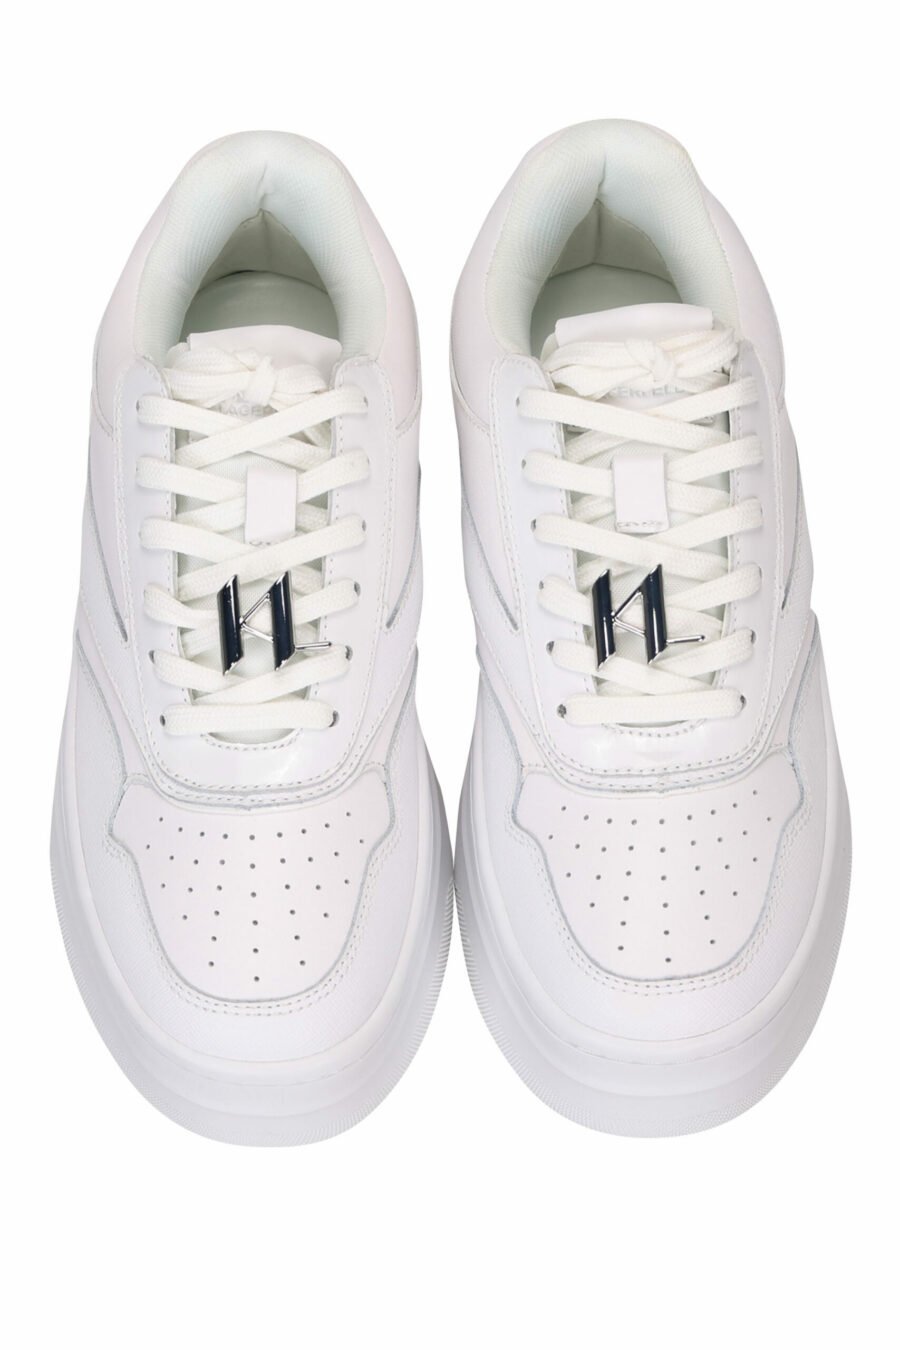 Zapatillas blancas con logo y plataforma - 5059529319518 4 scaled